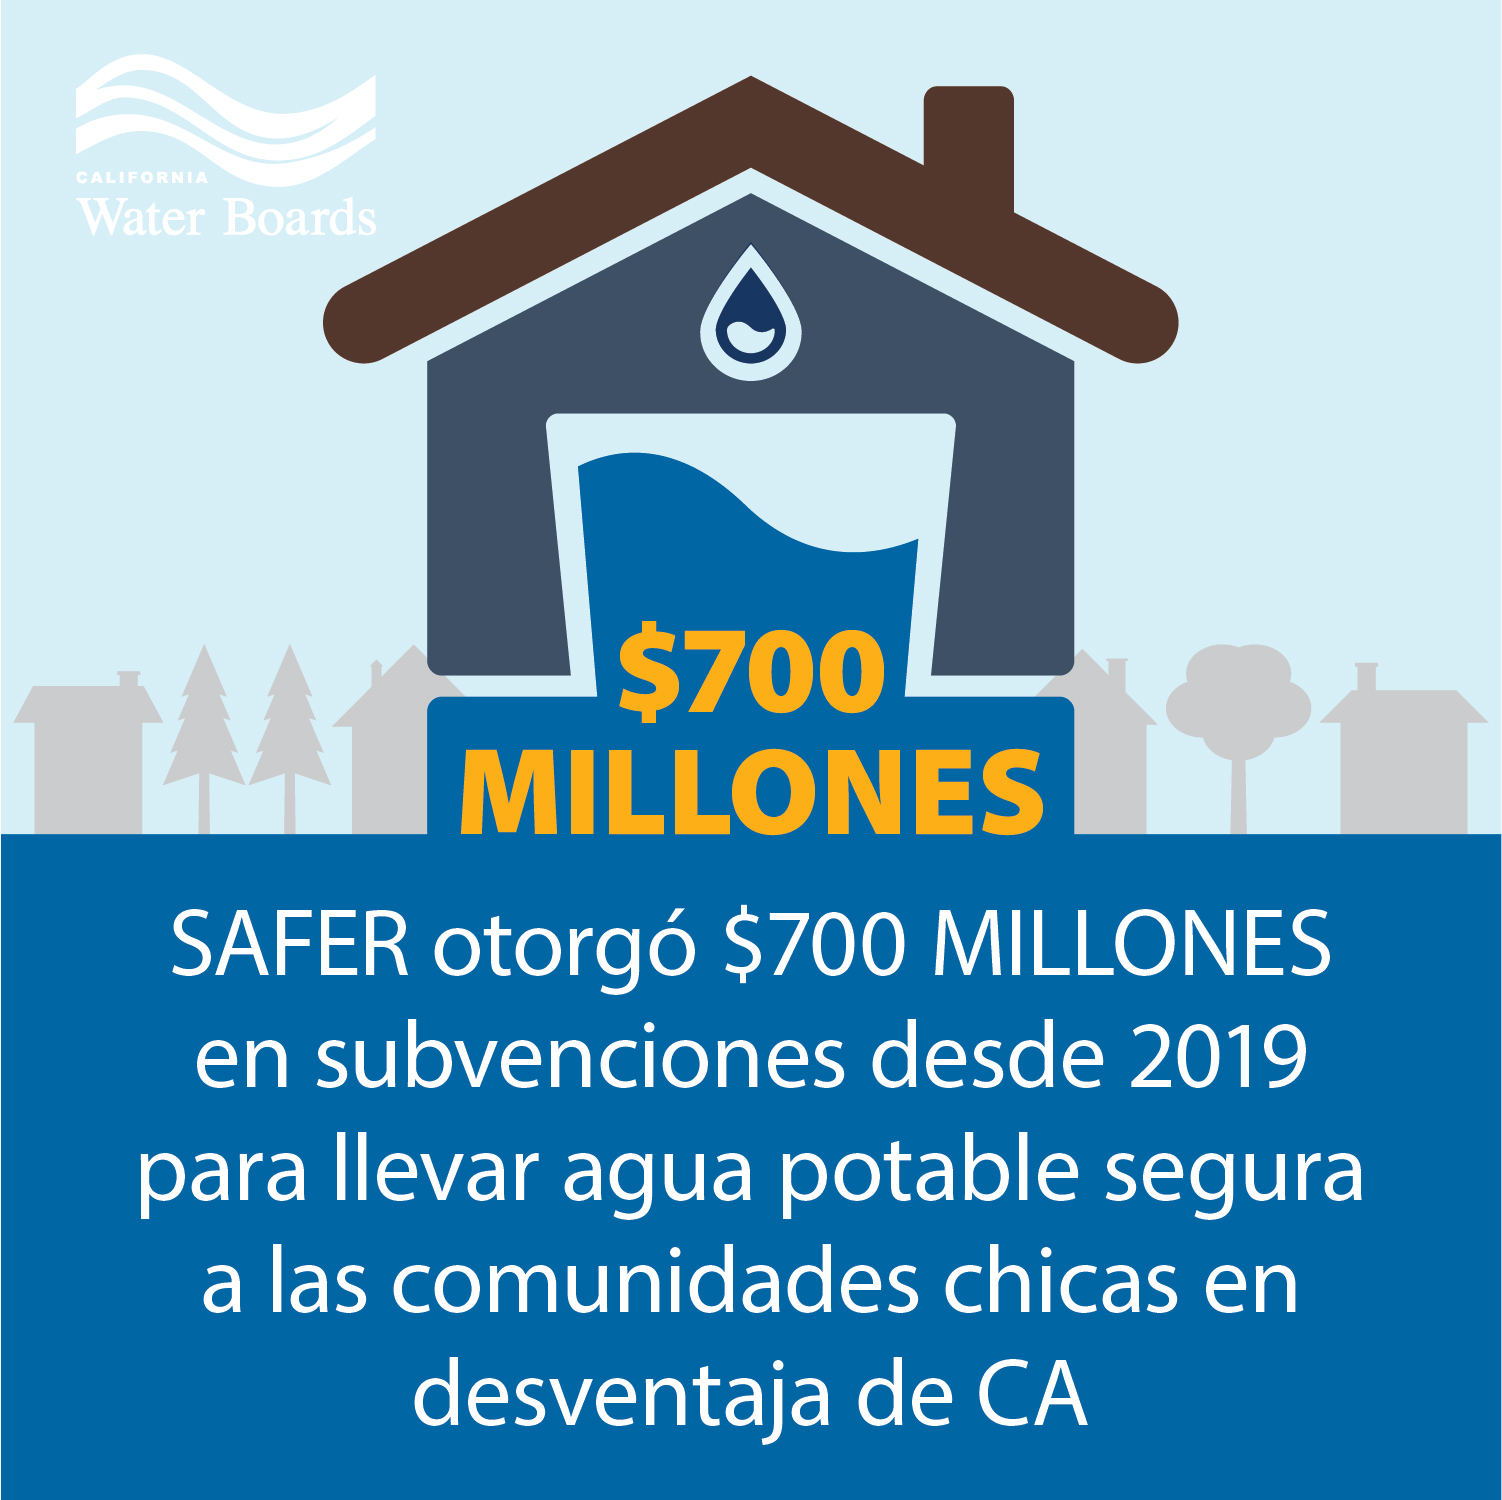 SAFER otorgó $700 millones en subvenciones desde 2019 para llevar agua potable segura a las comunidades chicas en desventaja de California